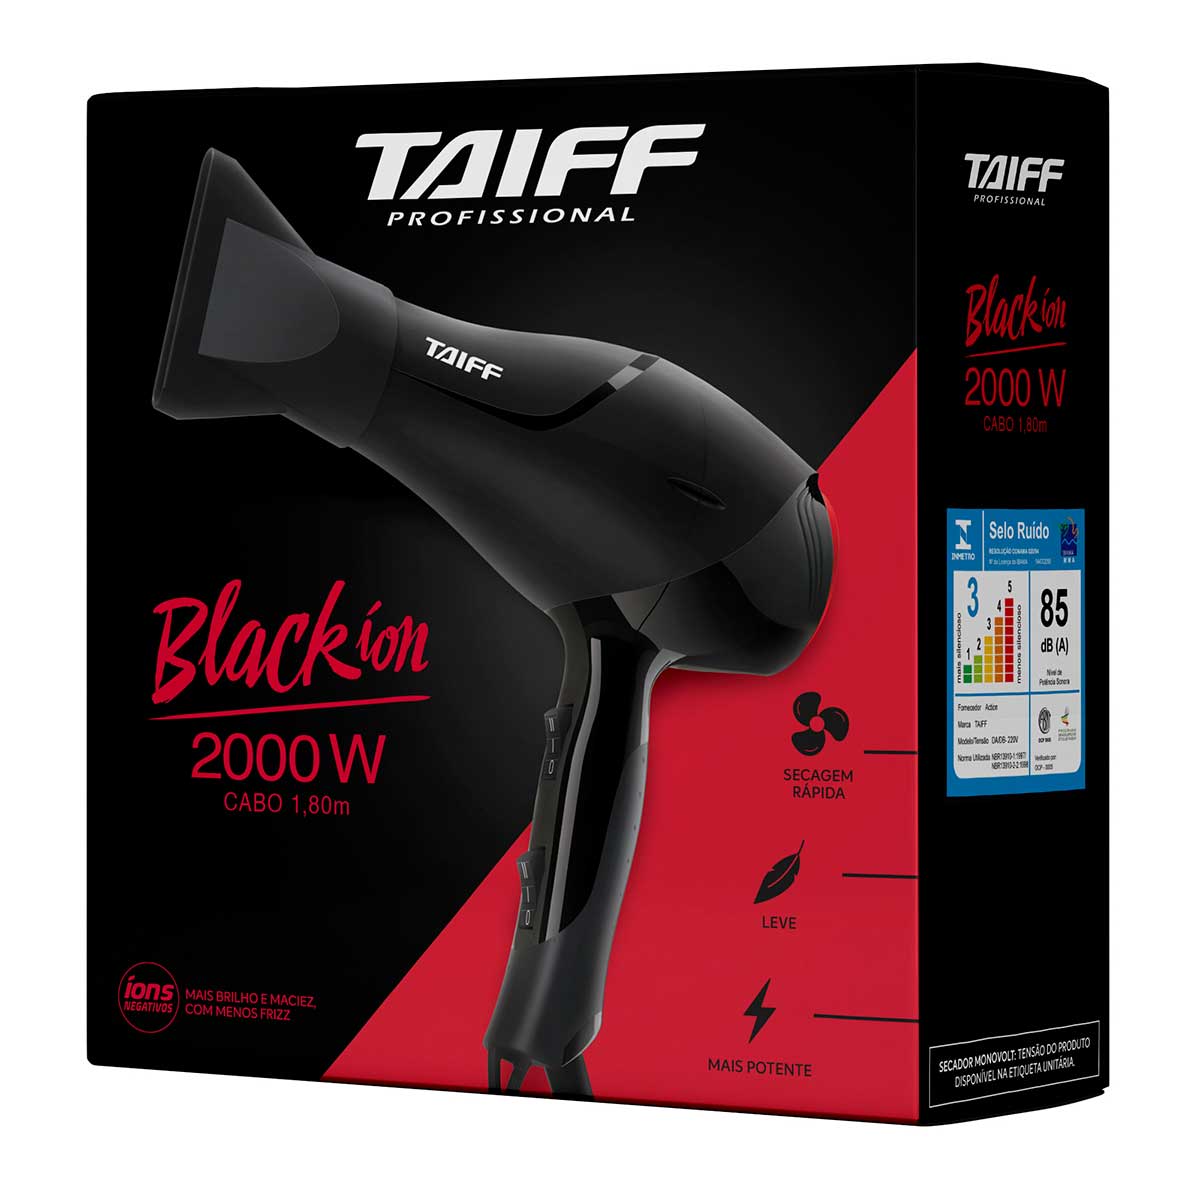 secador-de-cabelo-taiff-black-ion-2000w-black-220v-6.jpg